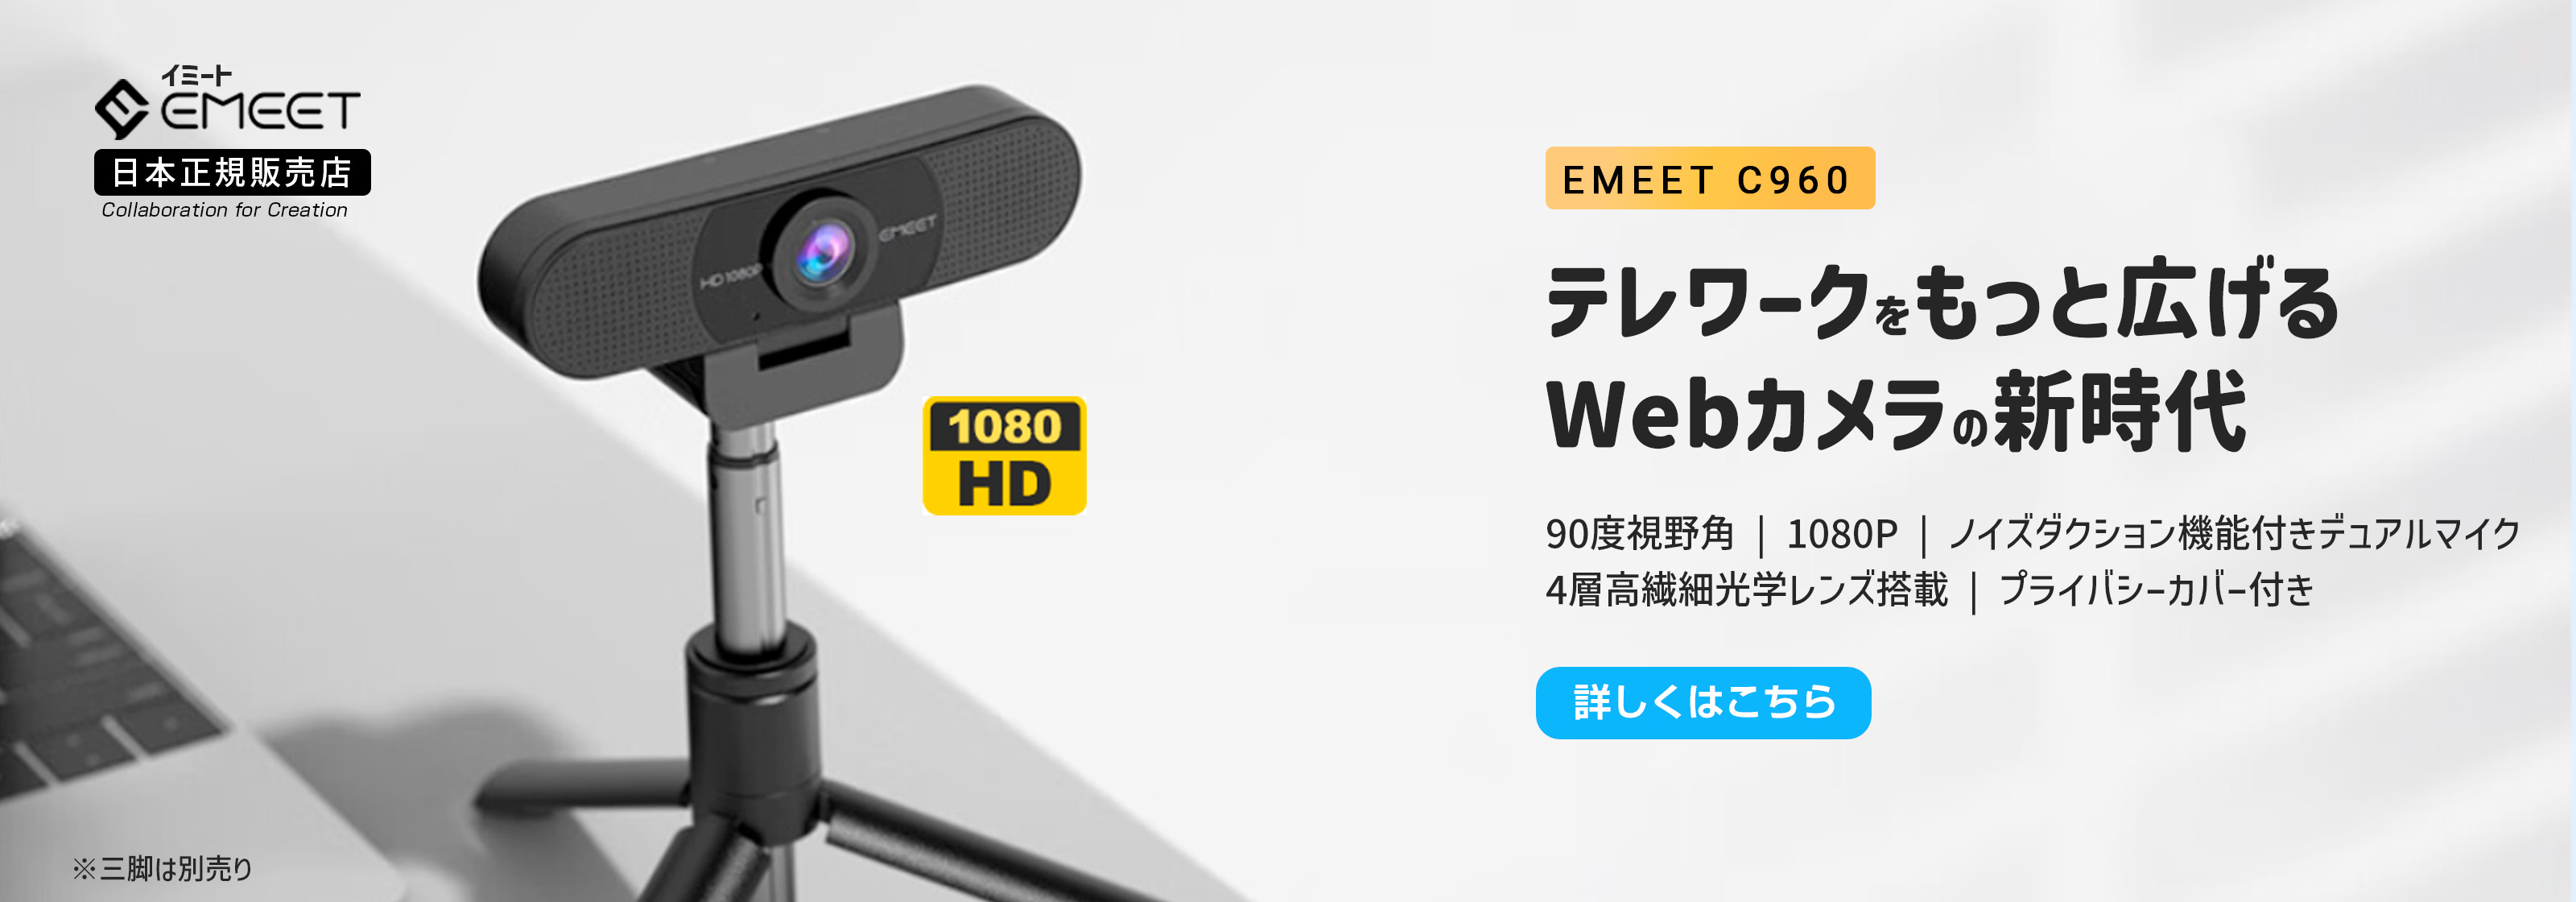 EMEET C960 ウェブカメラ